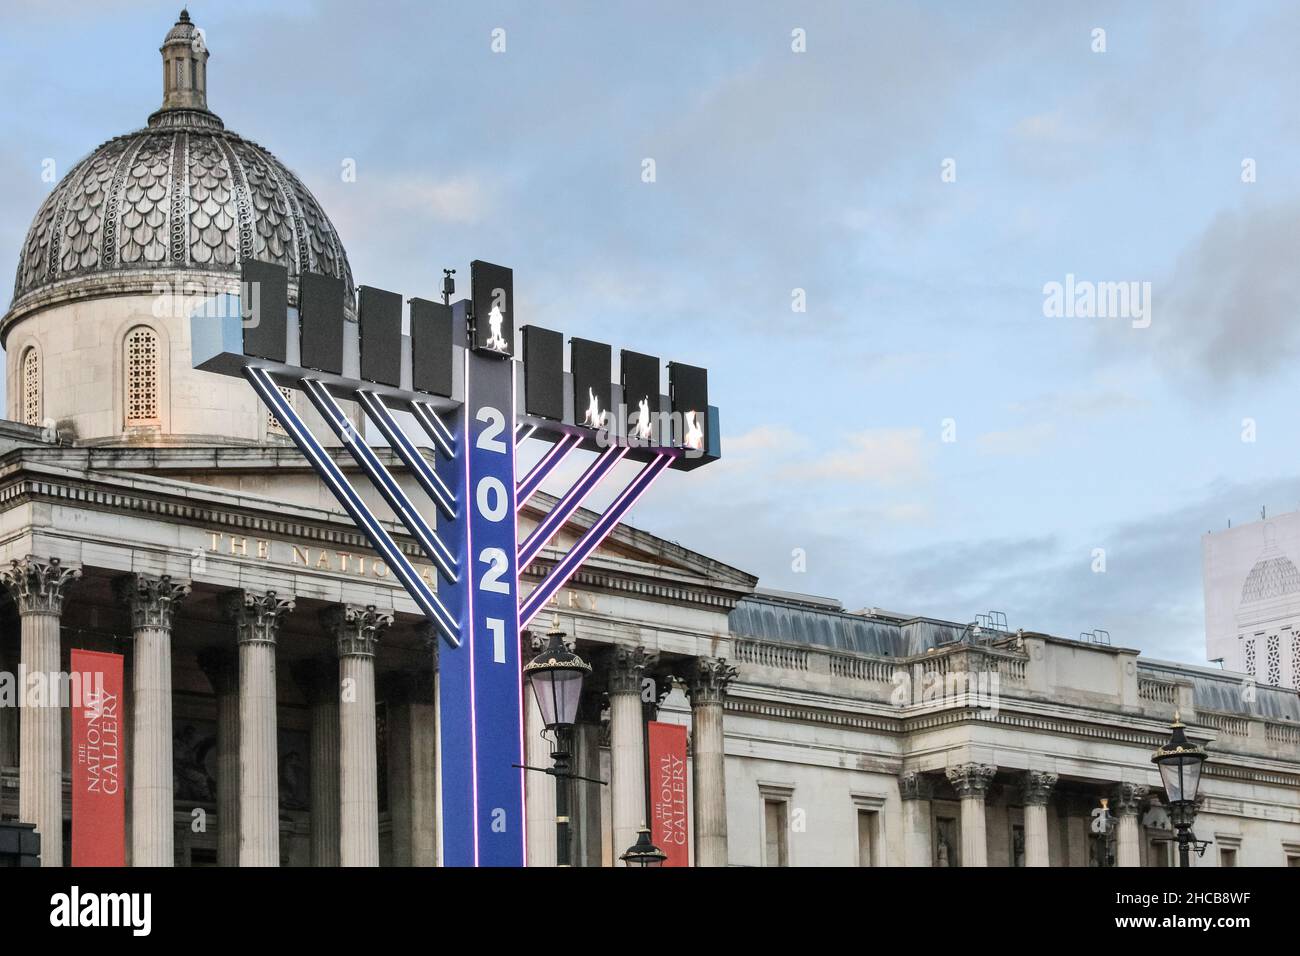 Il Menorah di fronte alla National Gallery a Trafalgar Square, per celebrare Hanukkah (Chanukah), il Festival ebraico della luce, Londra, Regno Unito Foto Stock